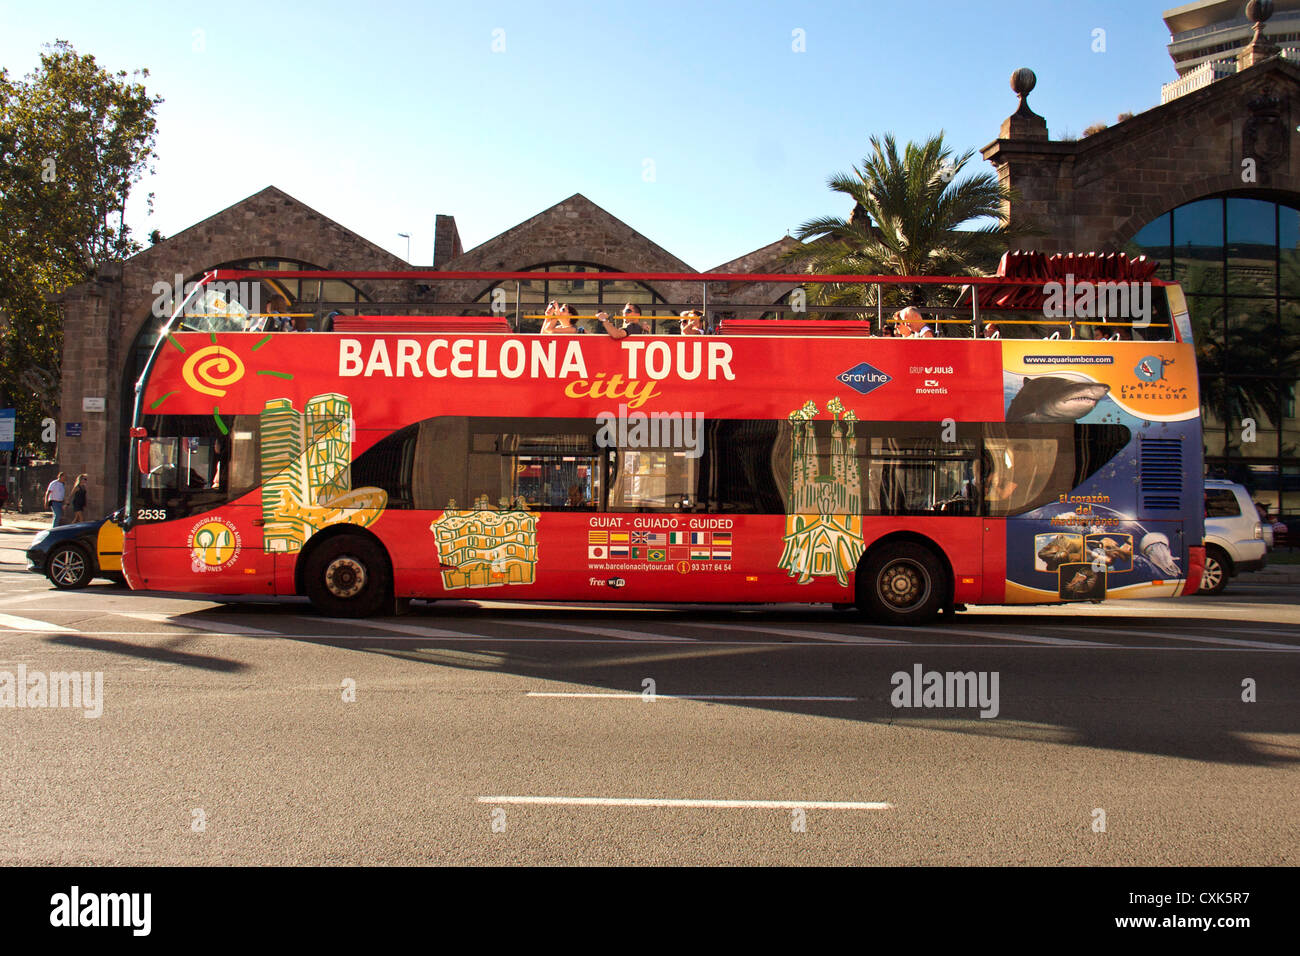 La ville de Barcelone vue voyant l'hop on hop off bus dans les rues de Barcelone, Espagne, Europe Banque D'Images